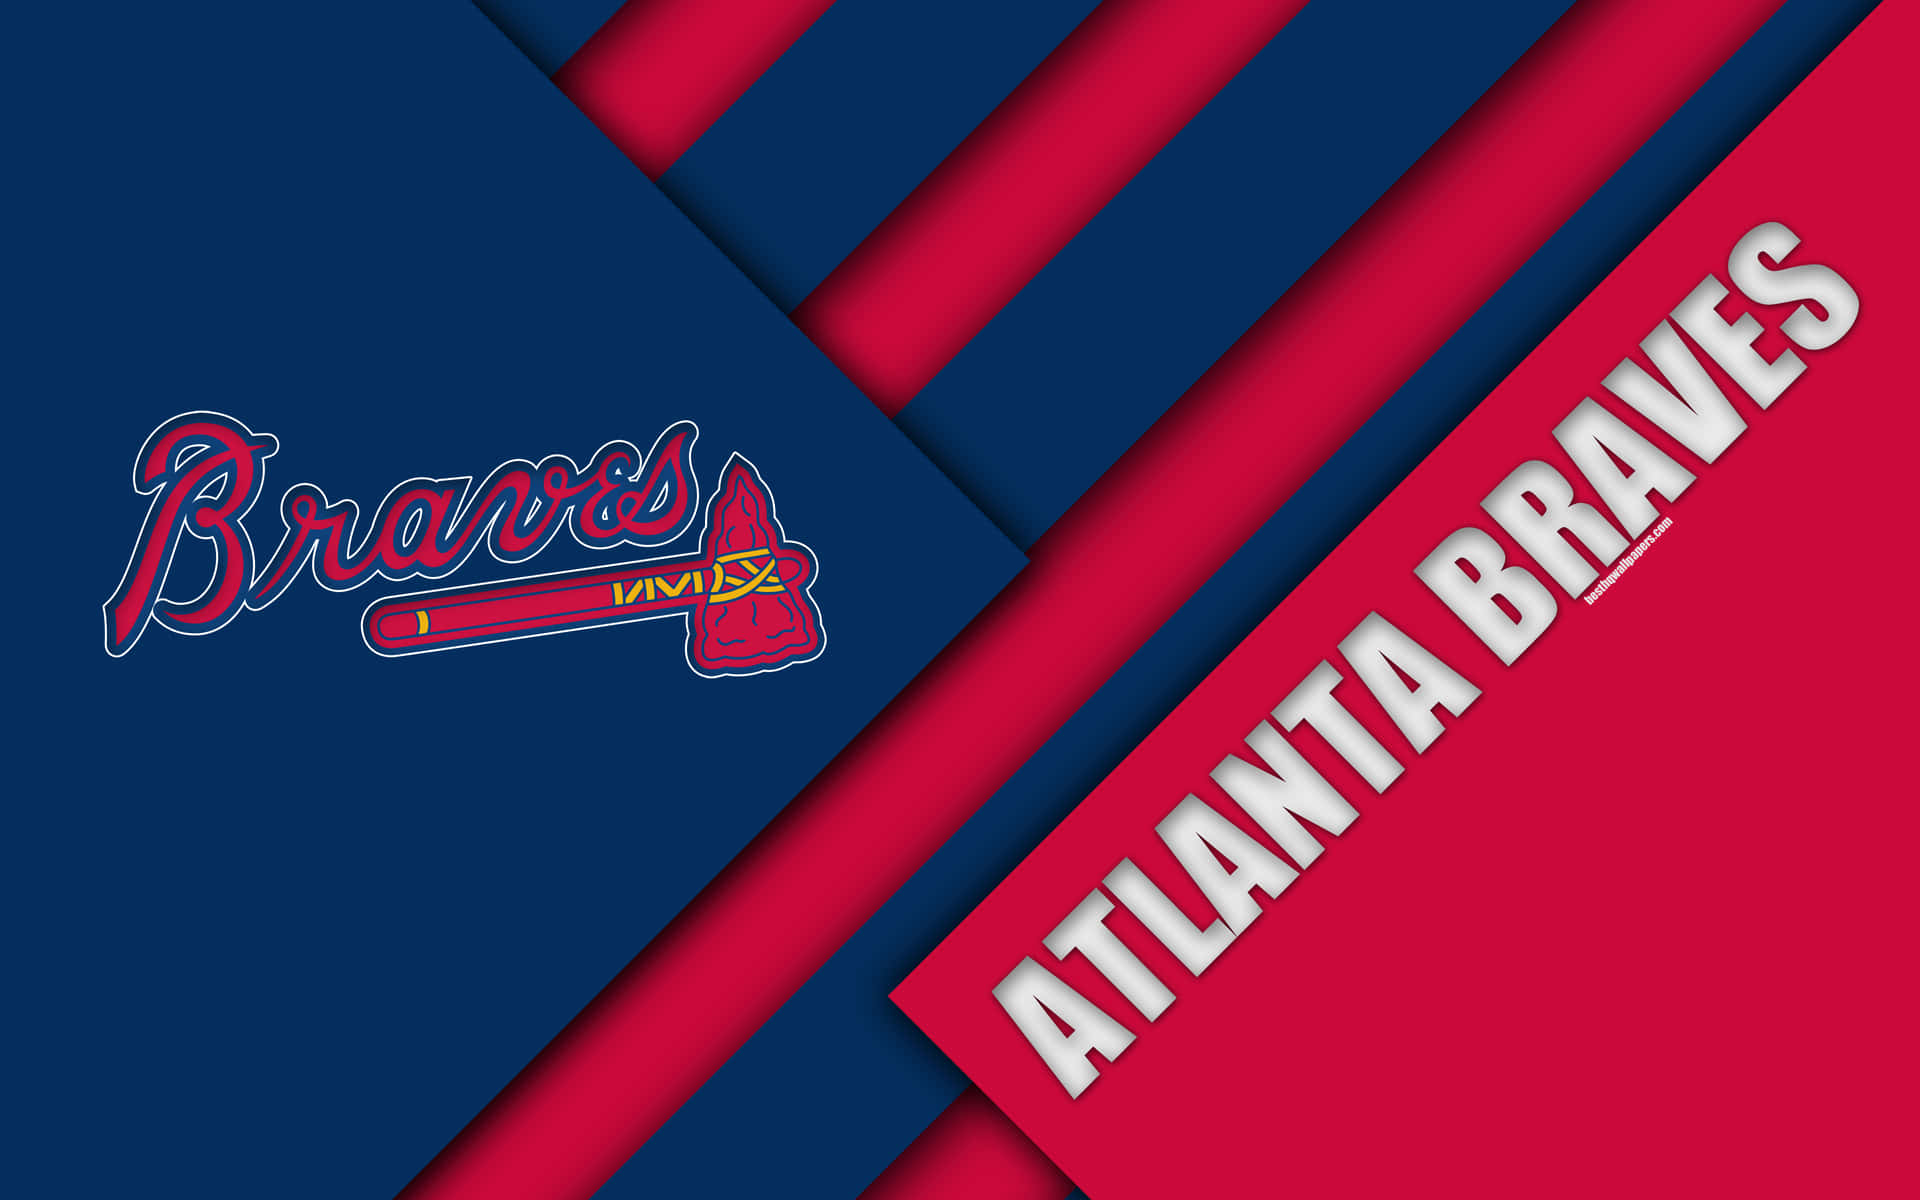 Vis din støtte til Atlanta Braves med dette hold logo tapet. Wallpaper